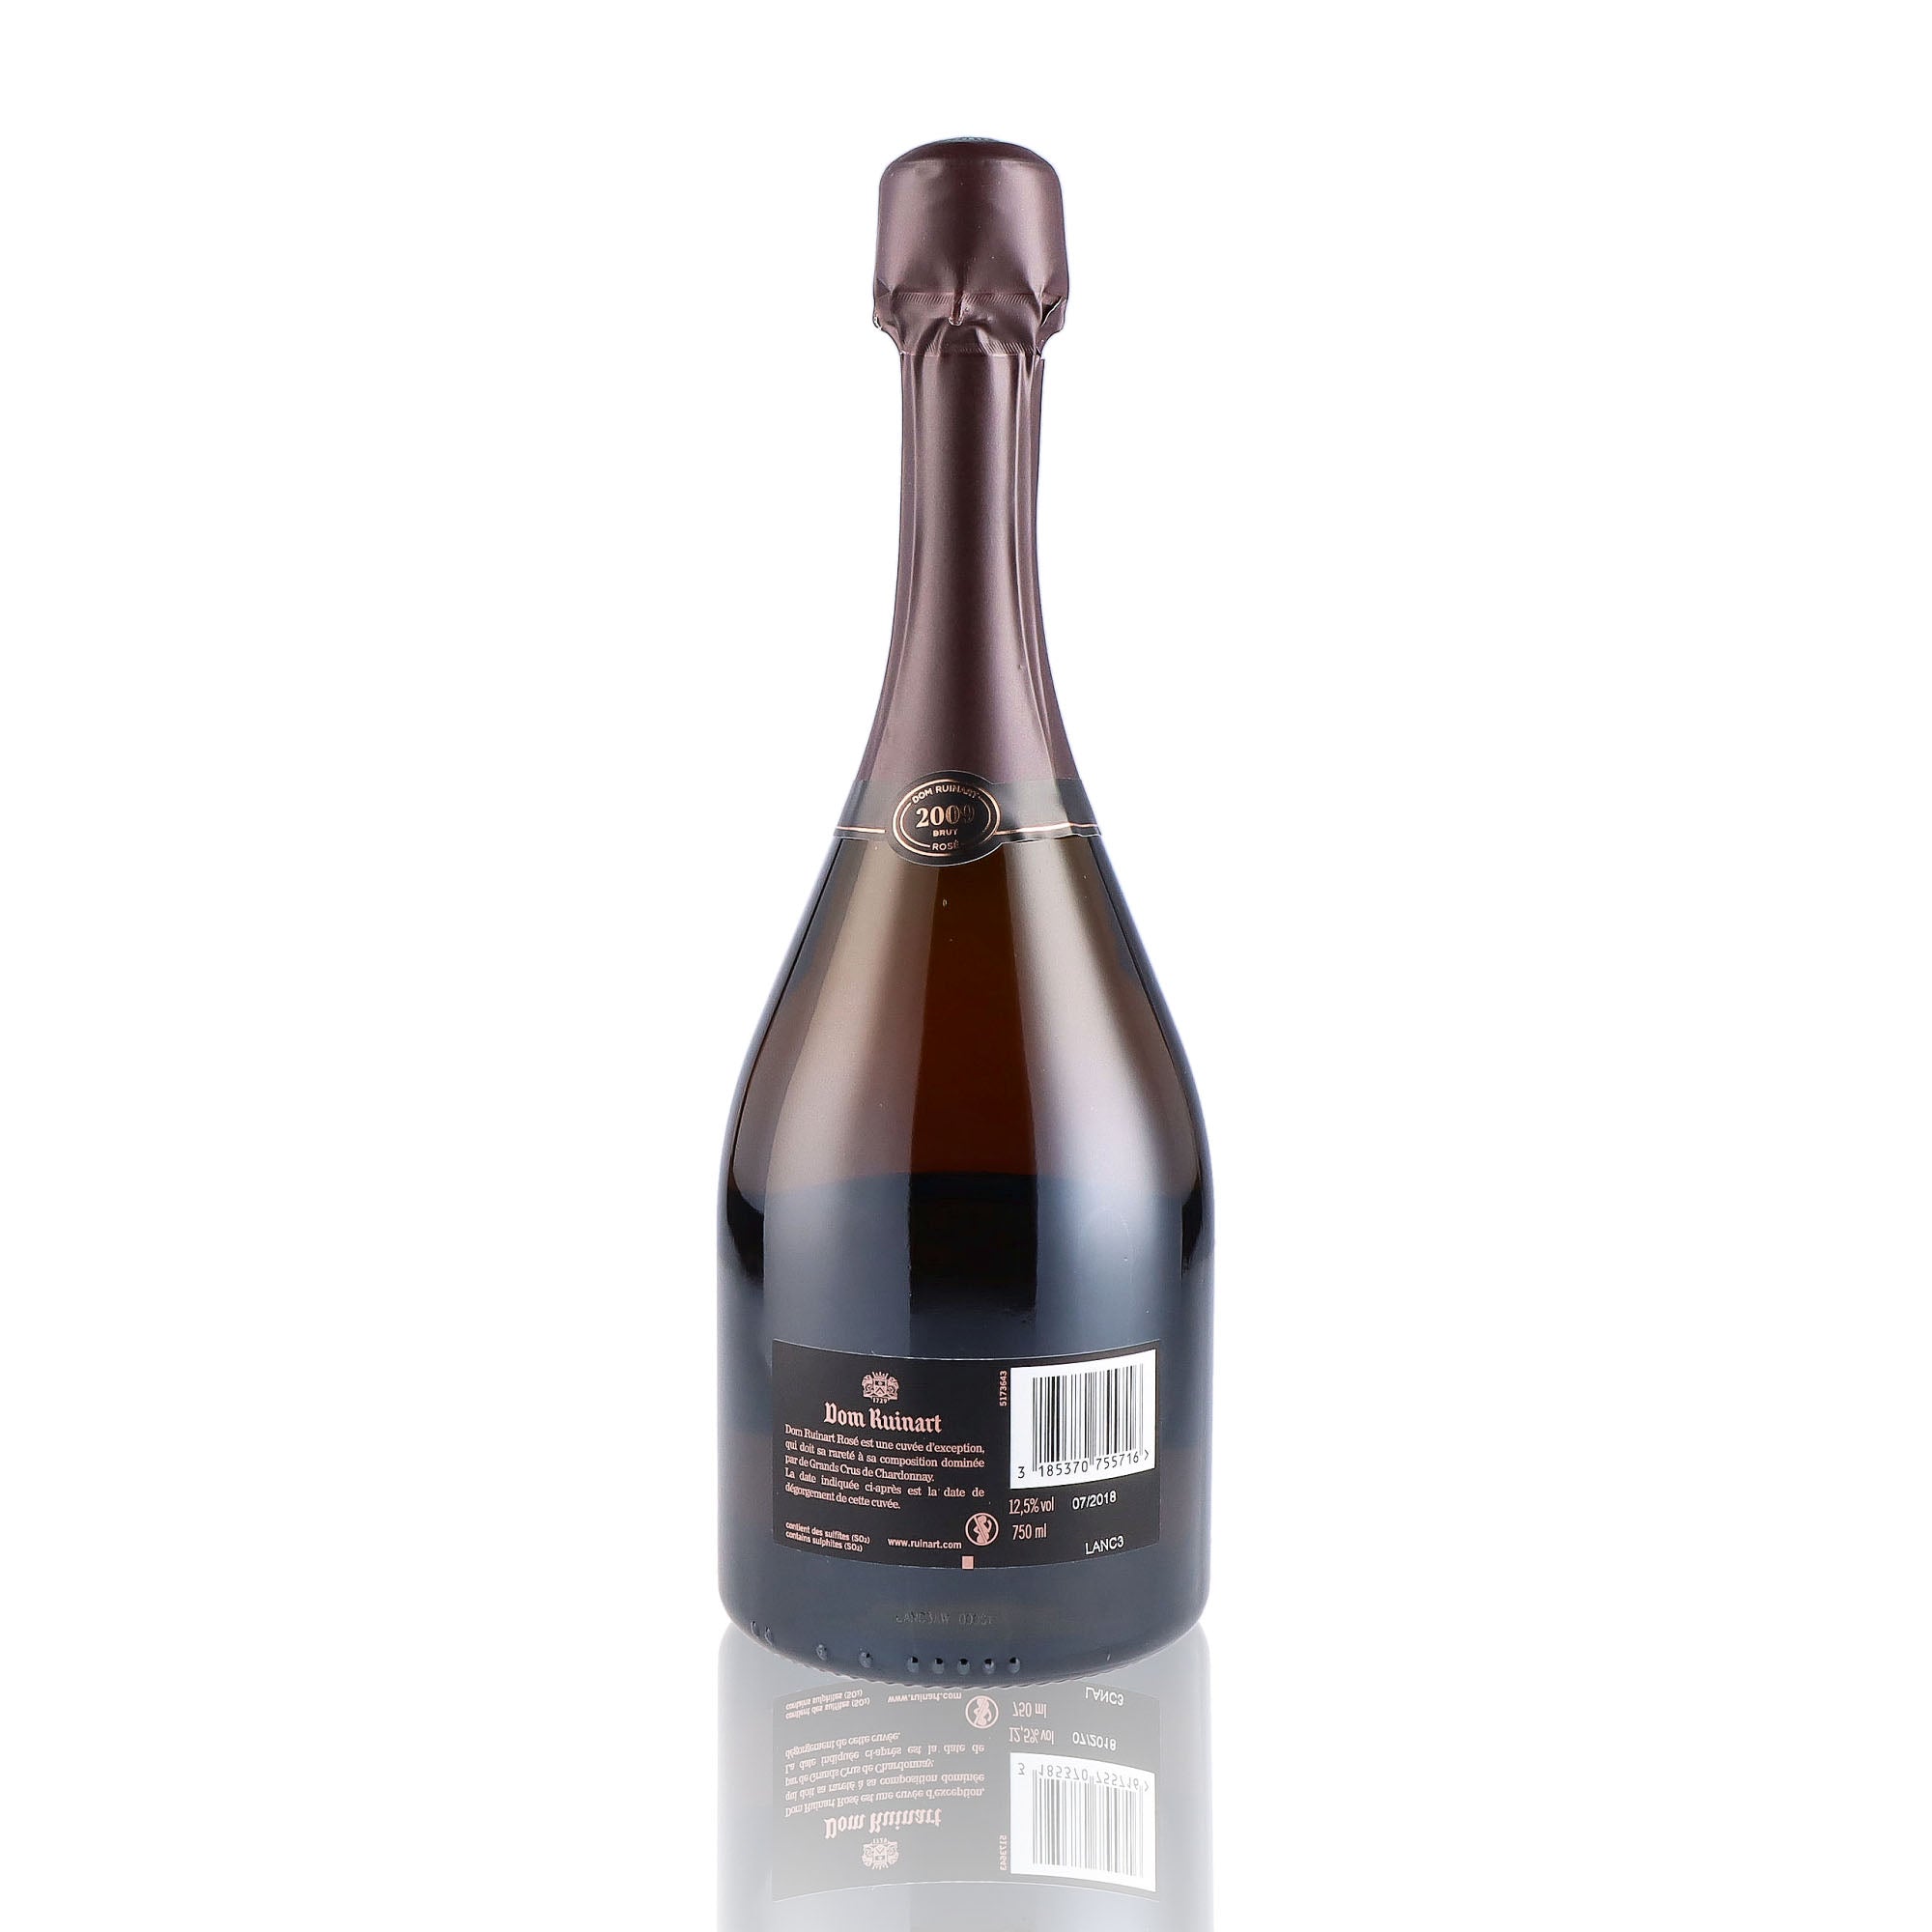 Une bouteille de champagne de la marque Dom Ruinart, de type rosé, millésime 2009.